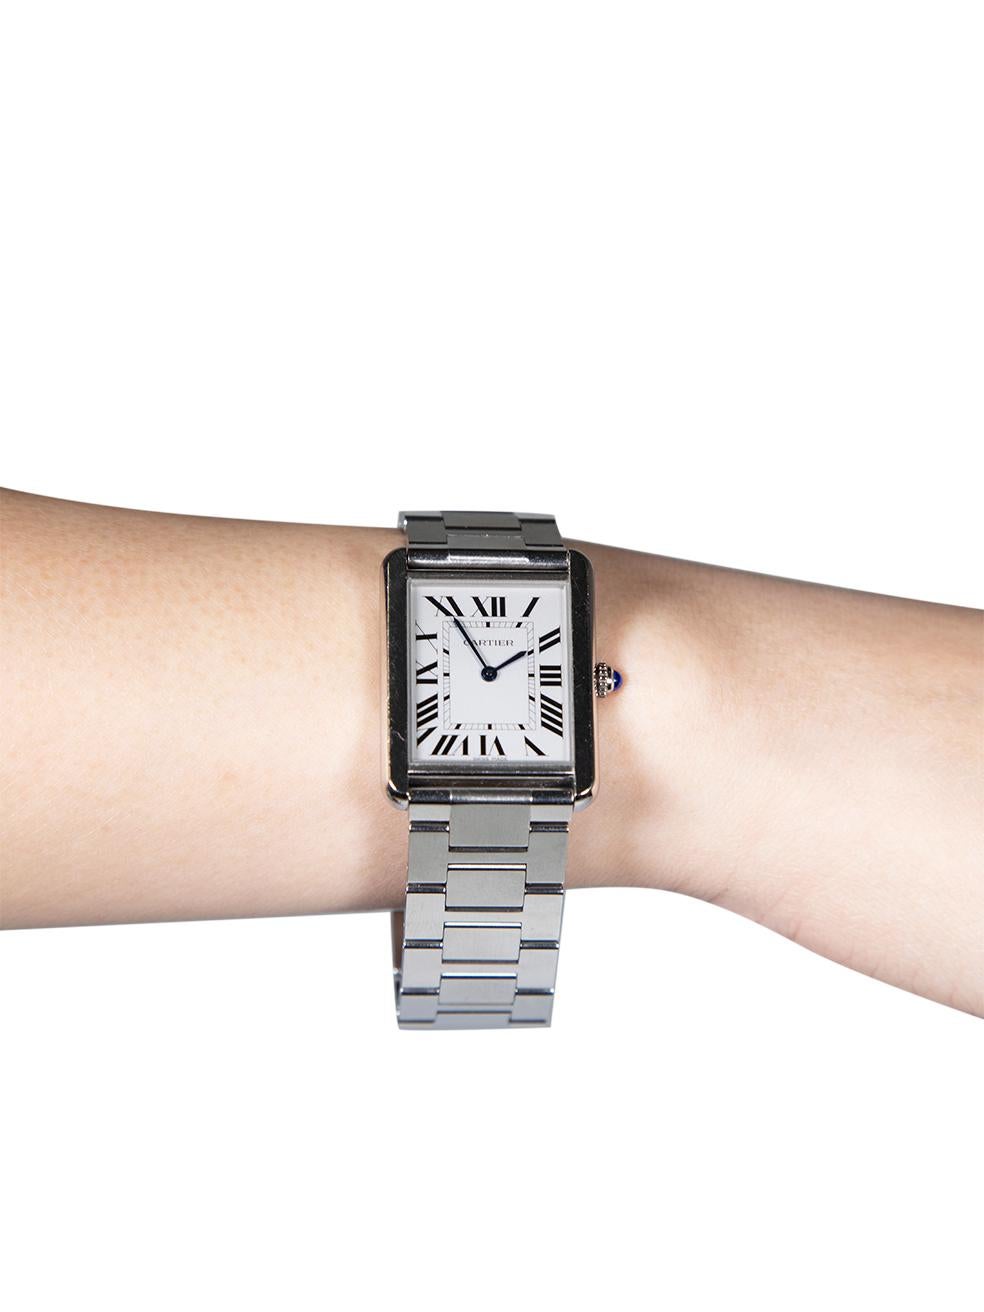 CONDIT ist sehr gut. Minimale Abnutzung der Uhr ist offensichtlich. Minimale Kratzer auf dem gesamten Stahl Hardware auf dieser gebrauchten Cartier Designer Wiederverkauf Artikel. Dieser Artikel wird mit Originalverpackung geliefert.
 
 
 
